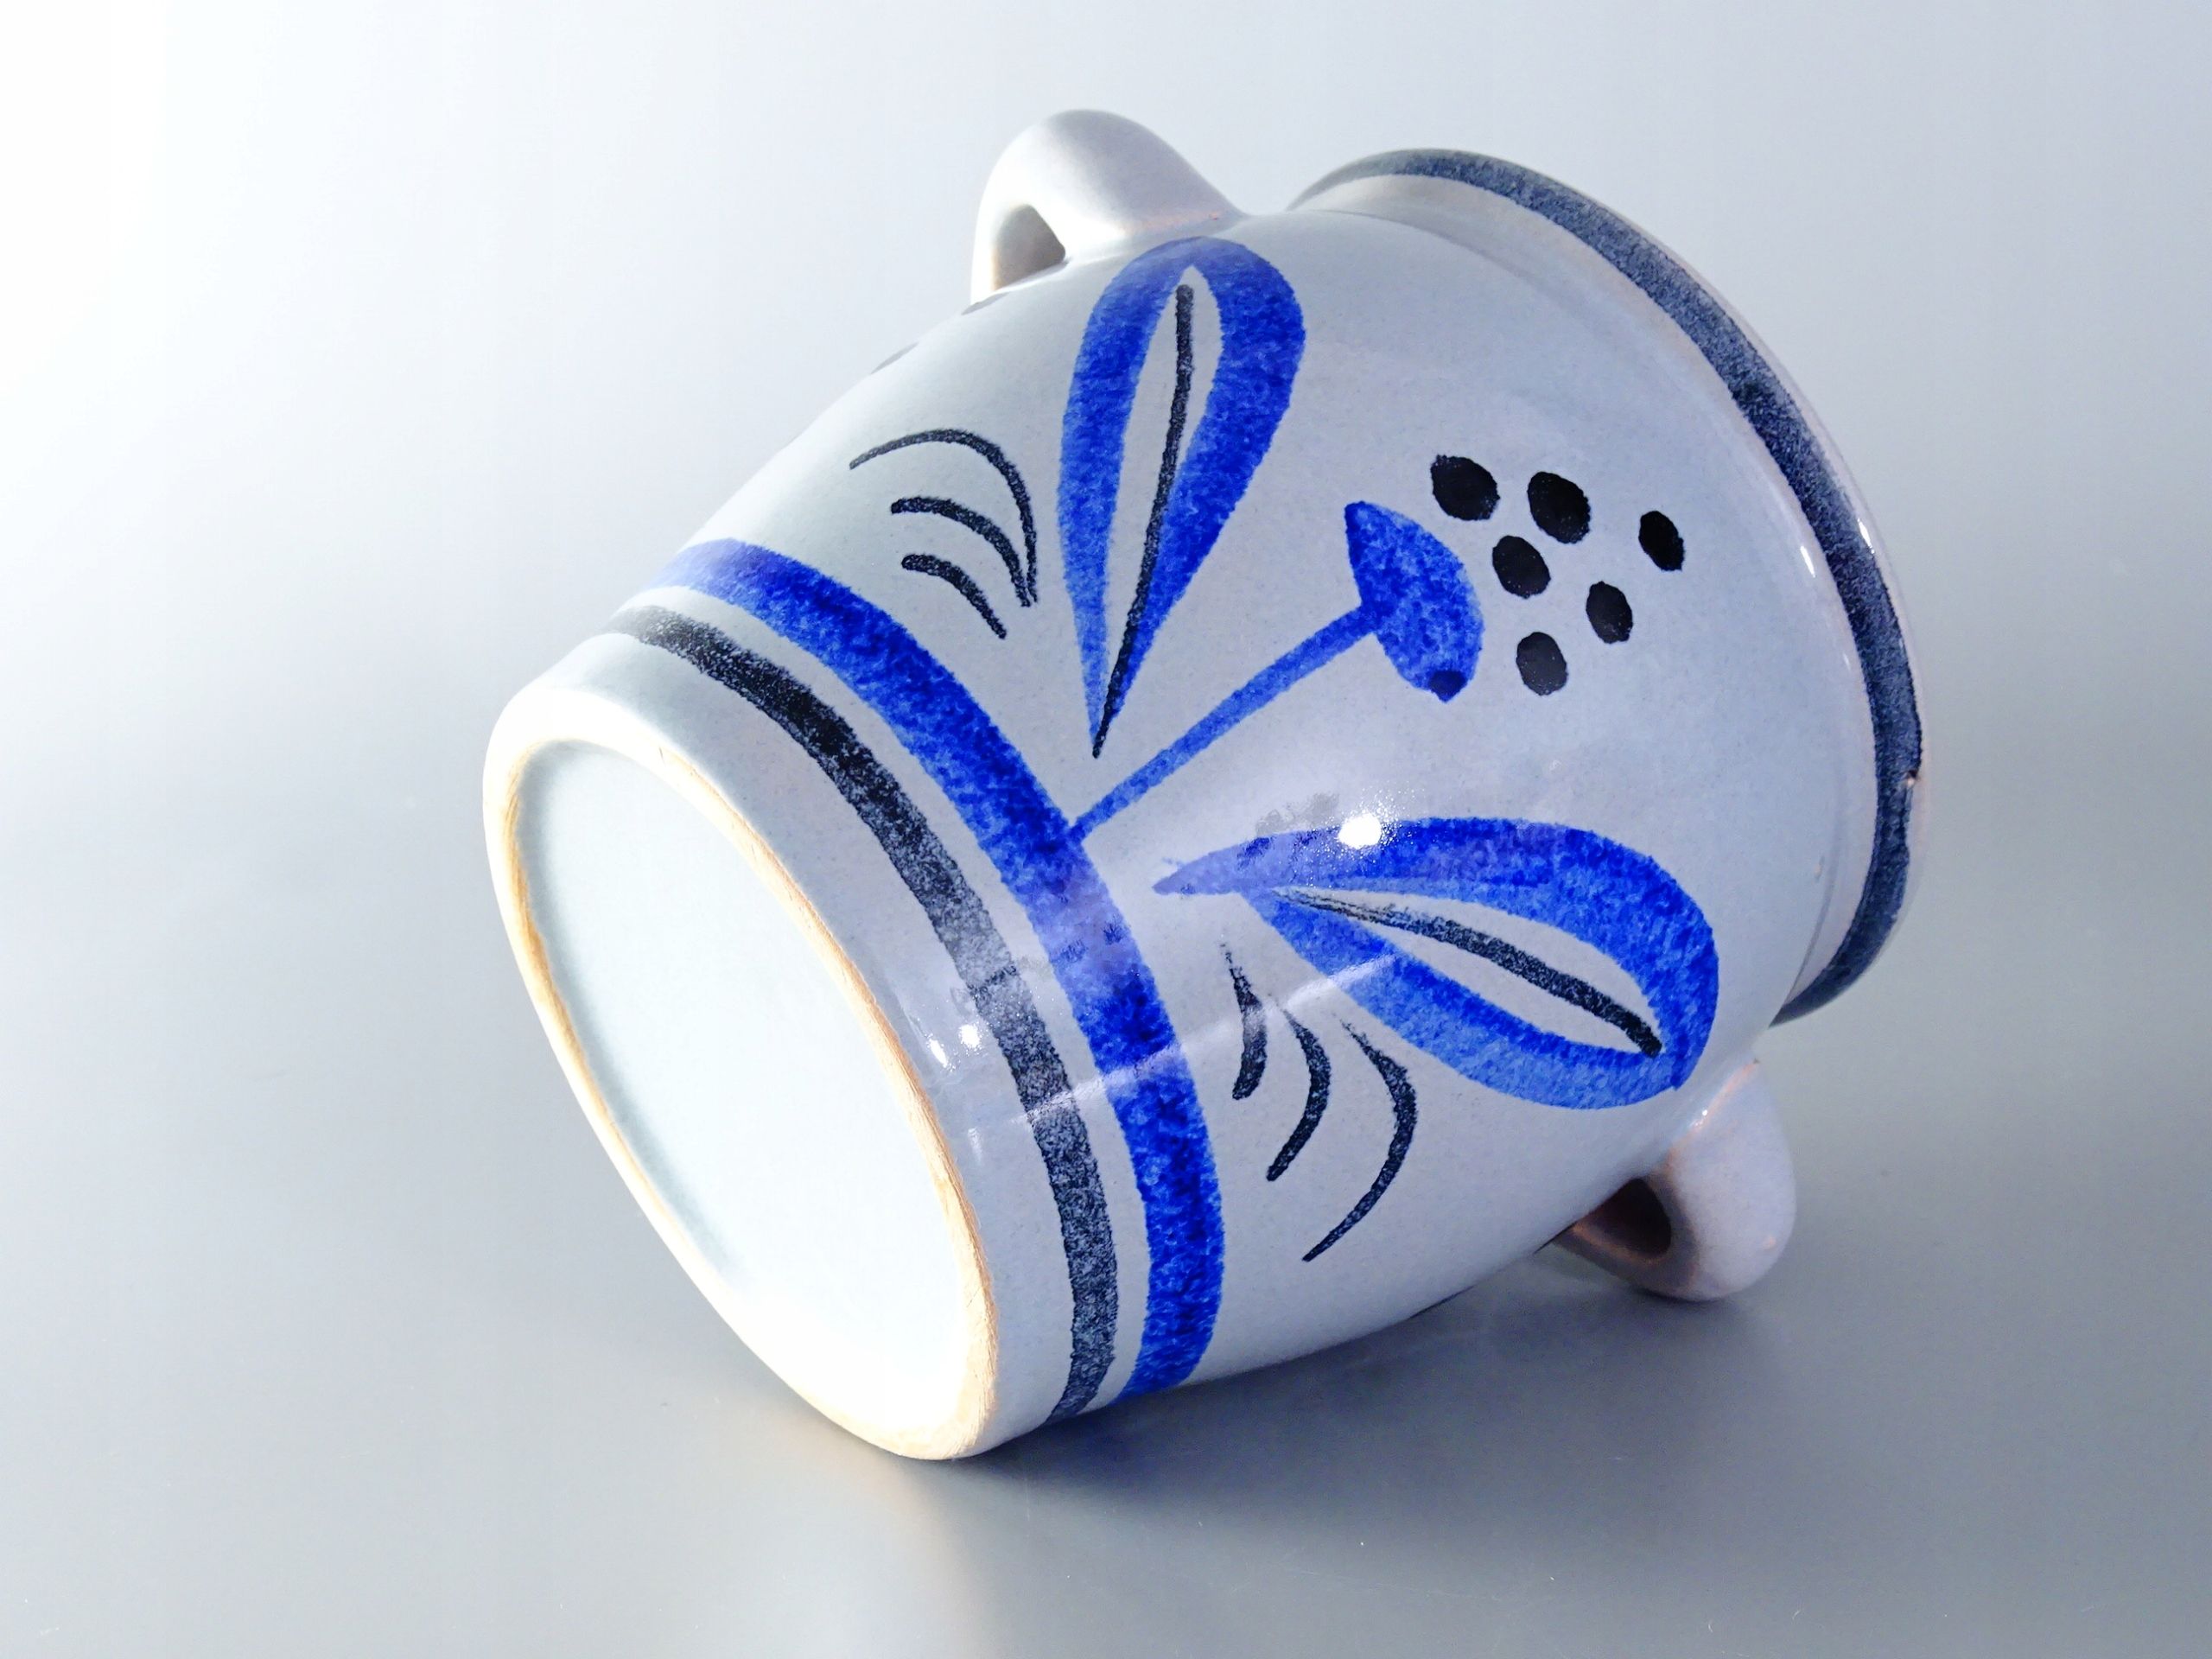 malowany ceramiczny pojemnik kuchenny garnek